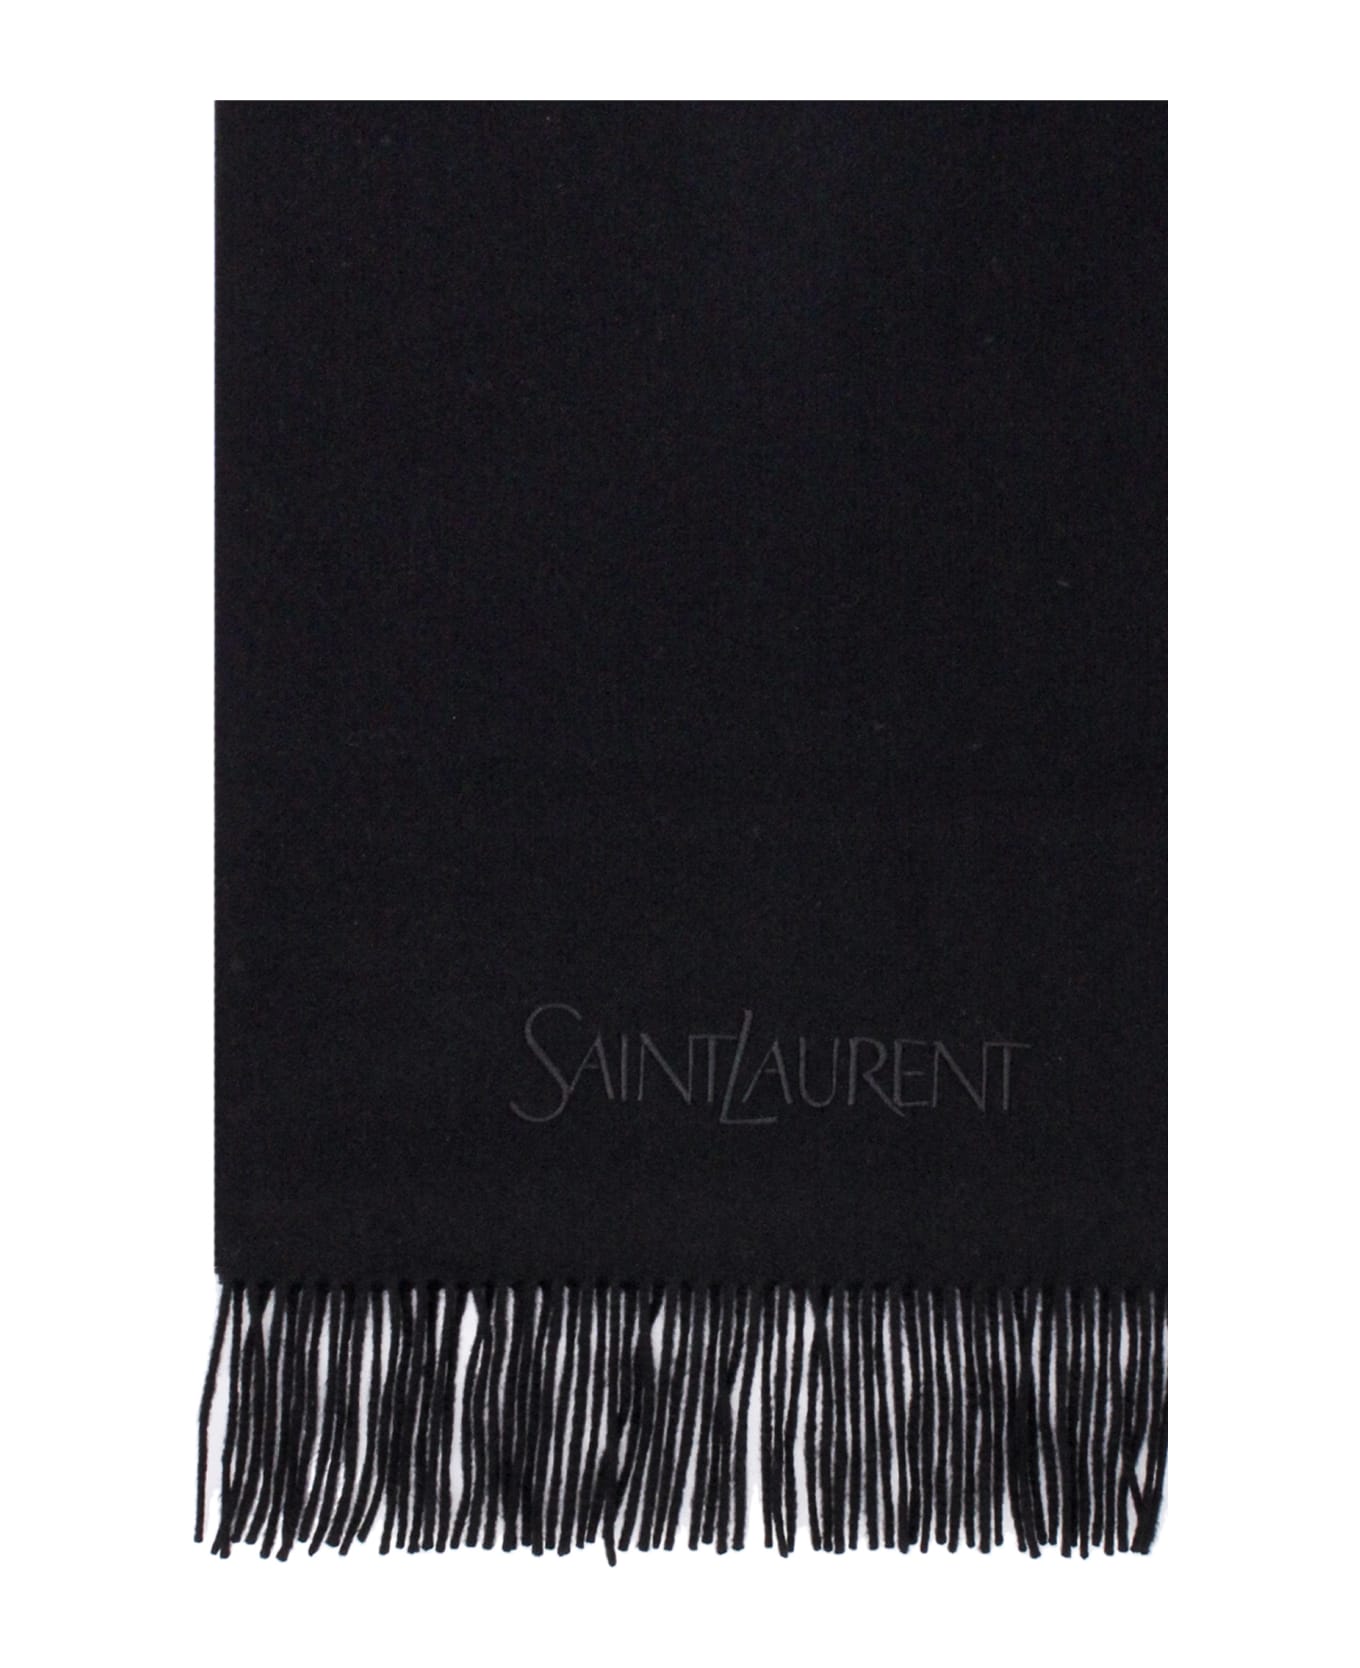 Saint Laurent Scarf - Black